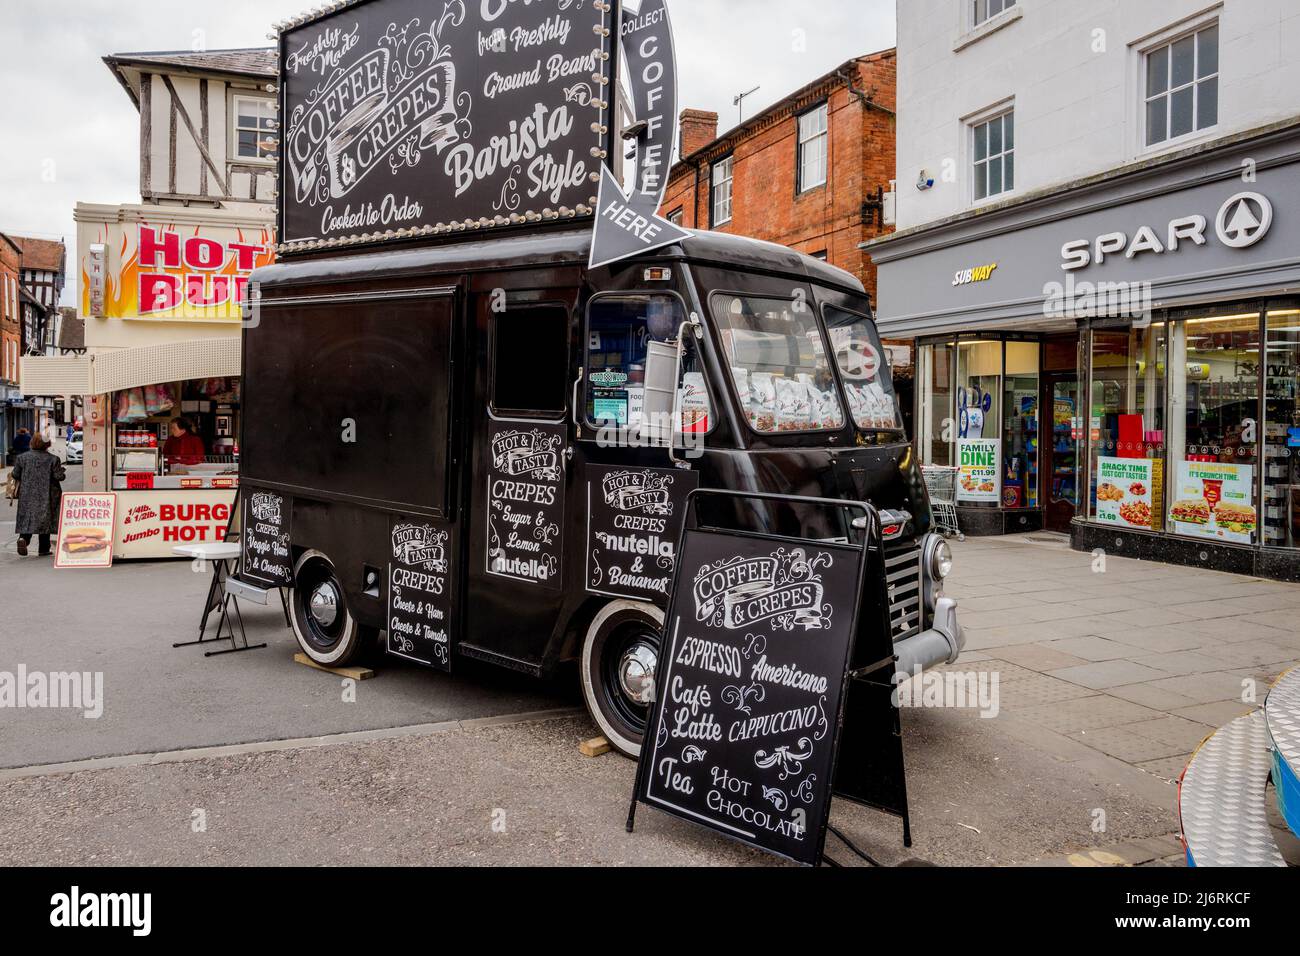 Kaffee und Crepes aus einem mobilen schwarzen Oldtimer mit Hot Dogs und  Burger-Stand, Ludlow, Shropshire, zu kaufen Stockfotografie - Alamy